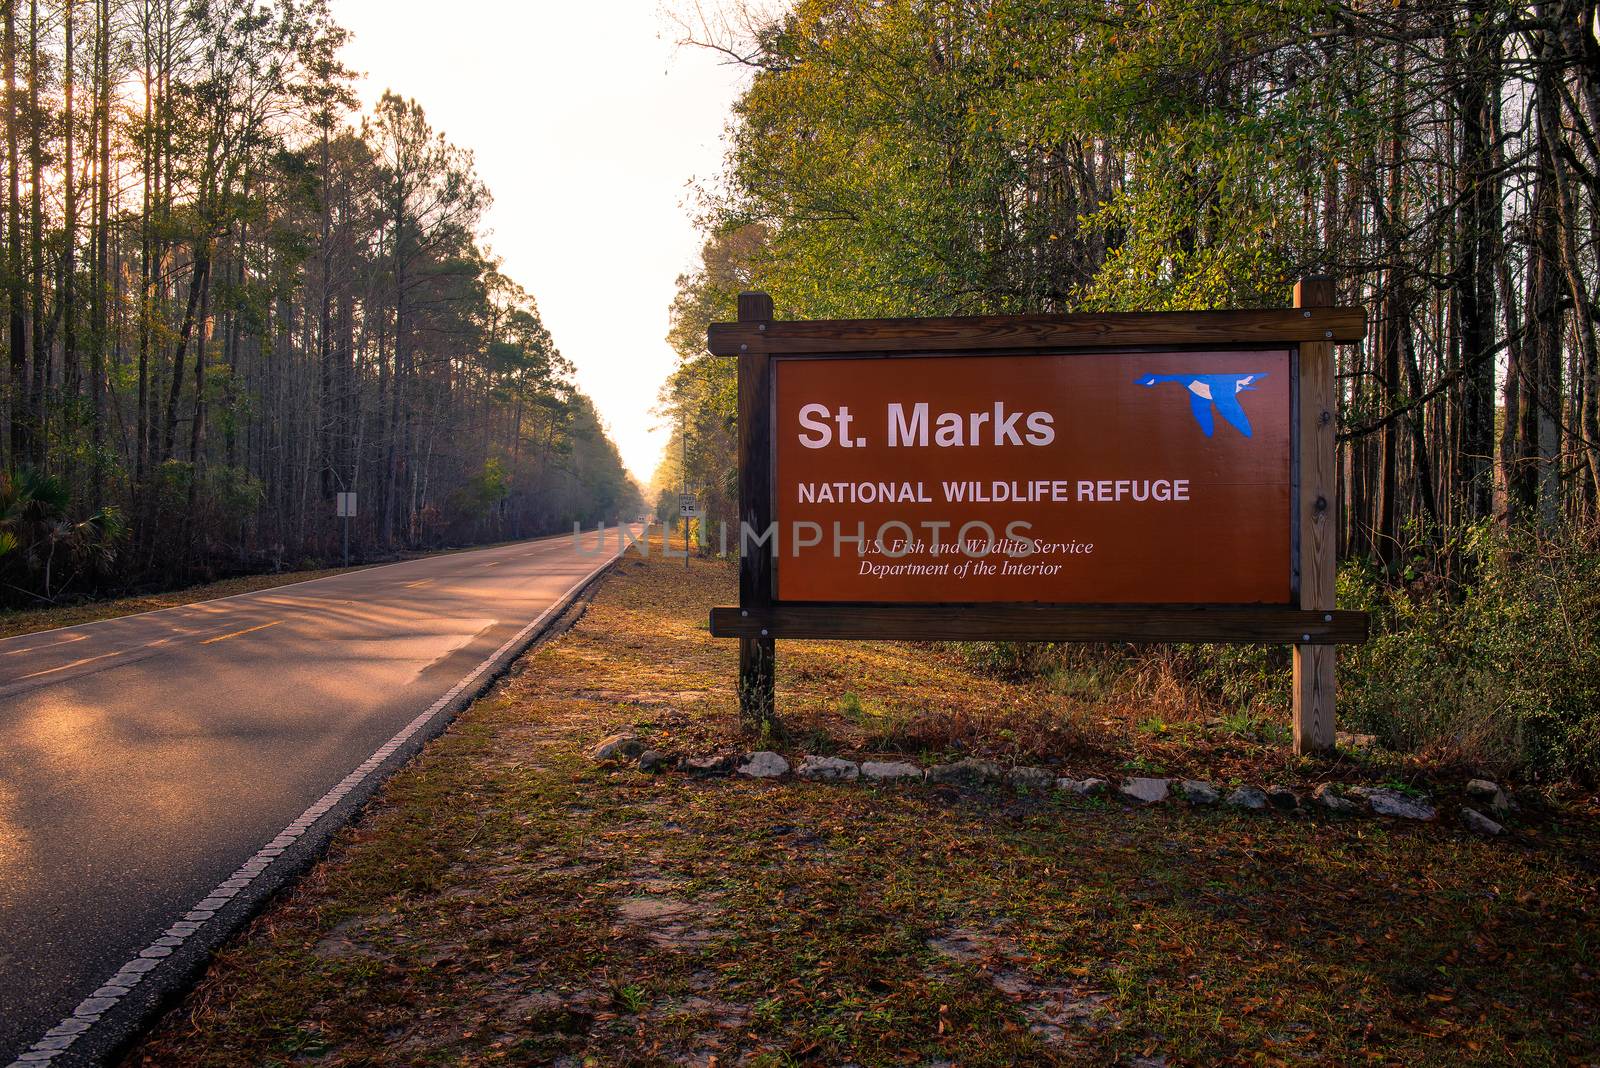 St. Marks National Wildlife Refuge entrance sign, Florida by nickfox